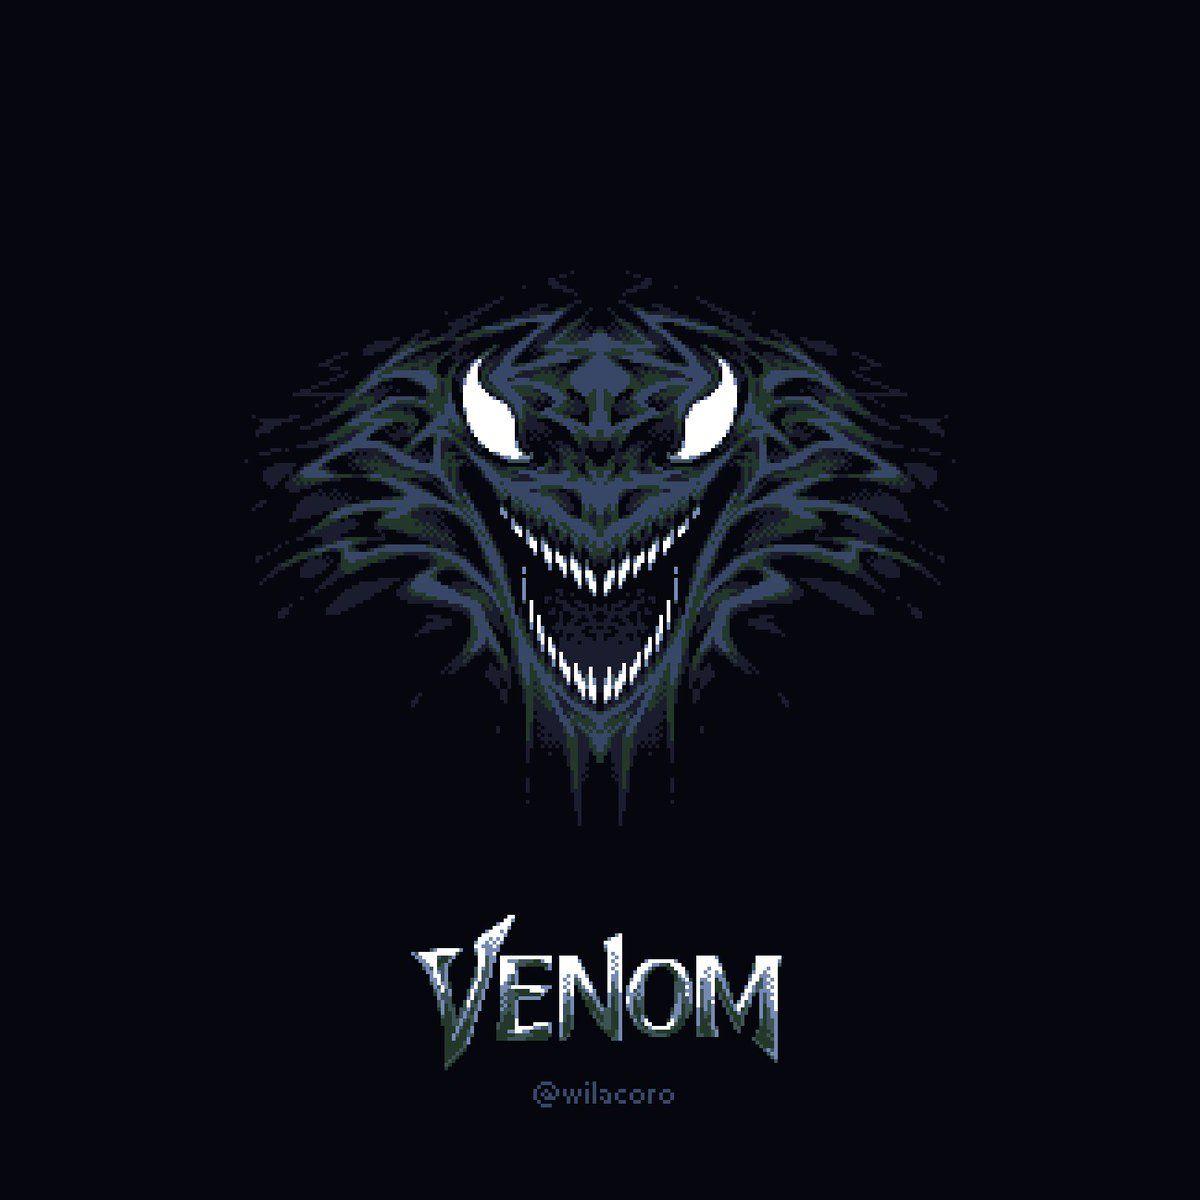 Symbiote Logo - corocorocoro on Twitter: 